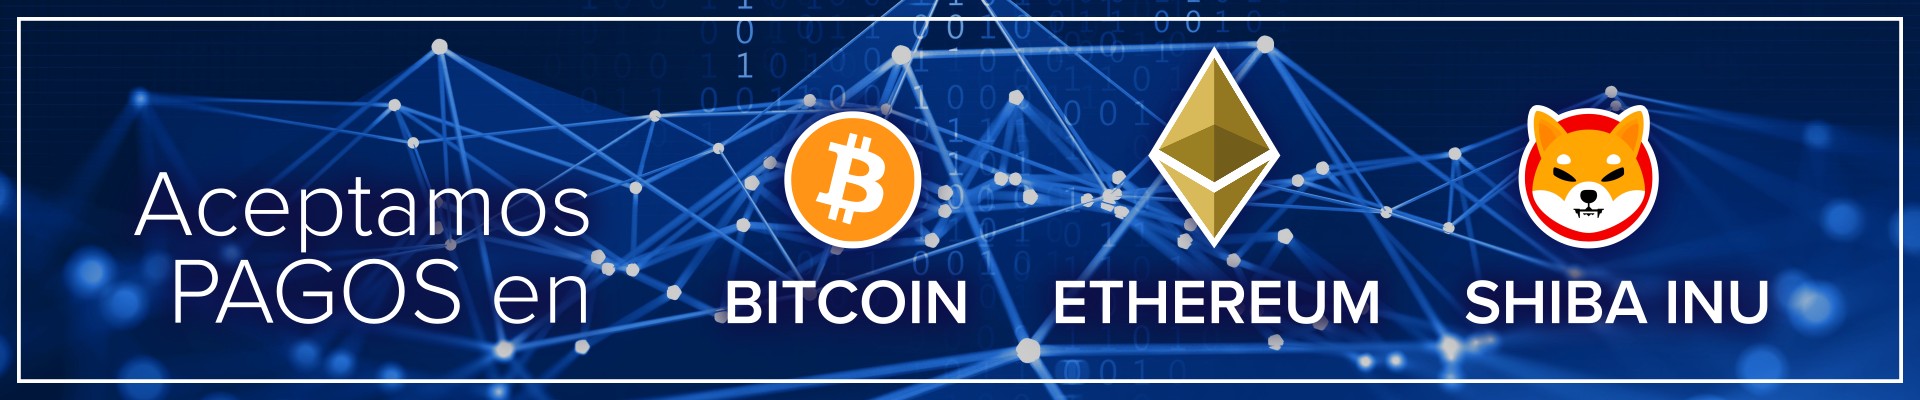 Aceptamos pagos en Bitcoin, Ethereum y Shiba Inu